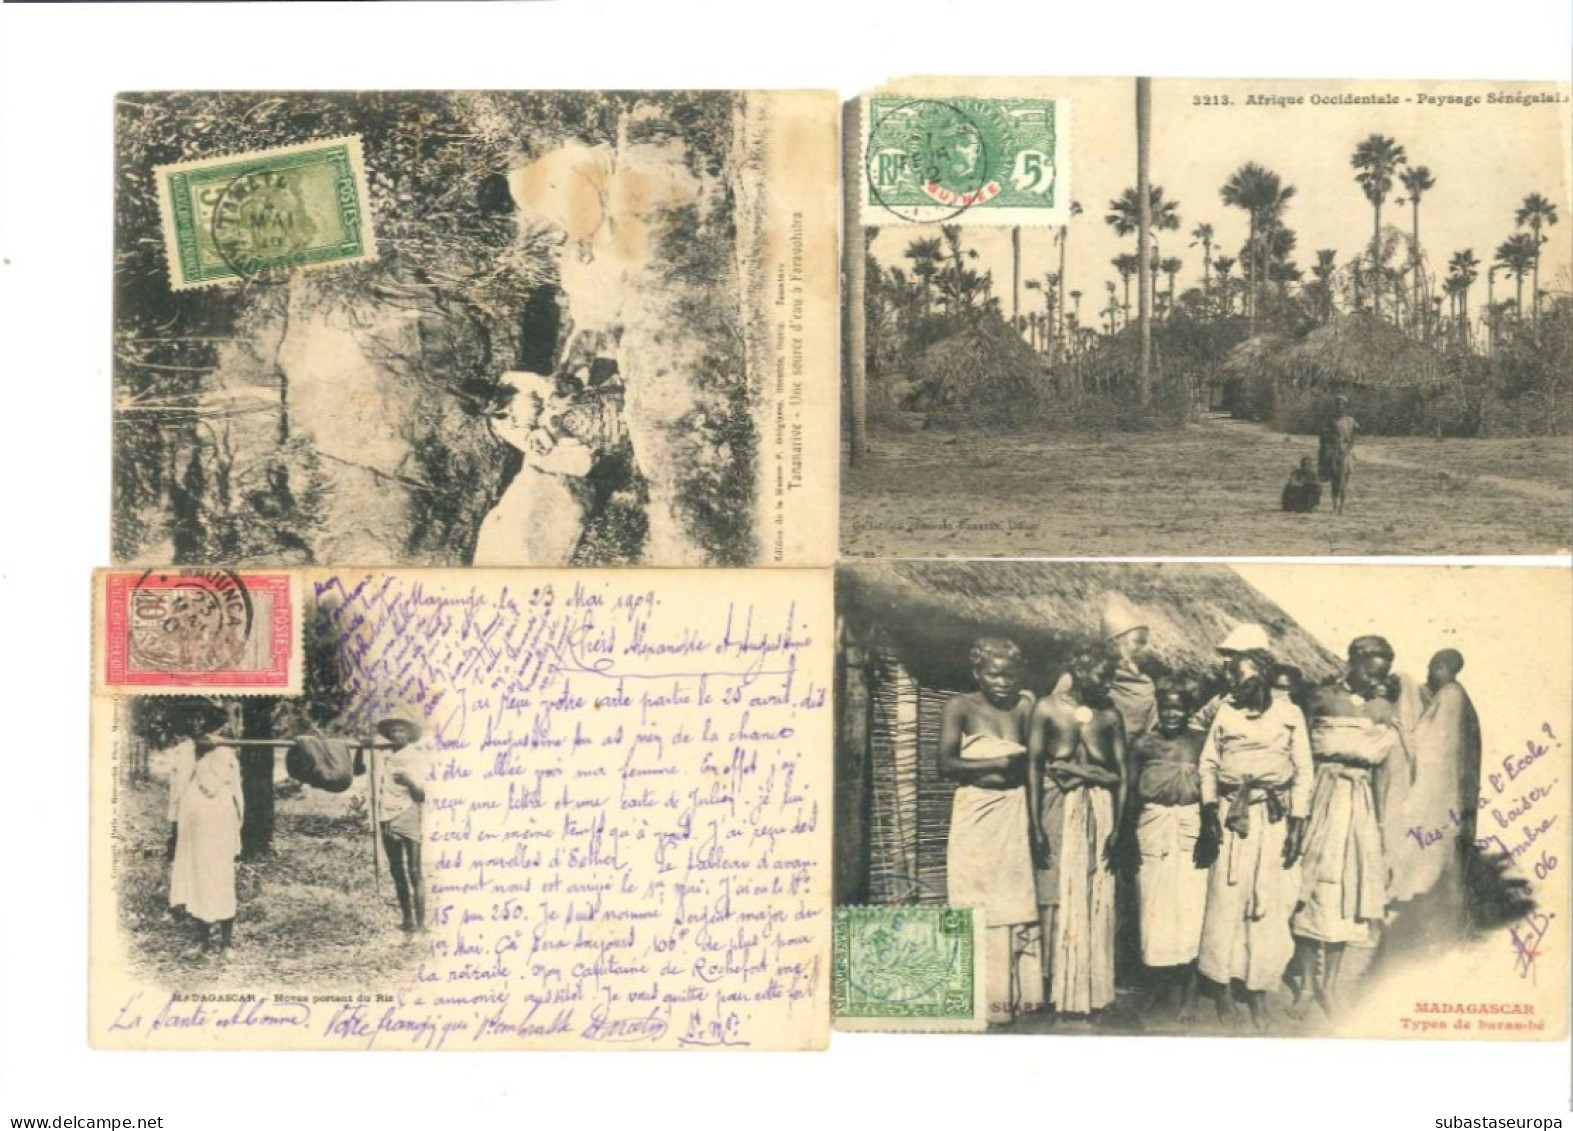 Lot de 24 cartes postales d'époque coloniale. Entre les années 1904 et 1939. Très jolies.